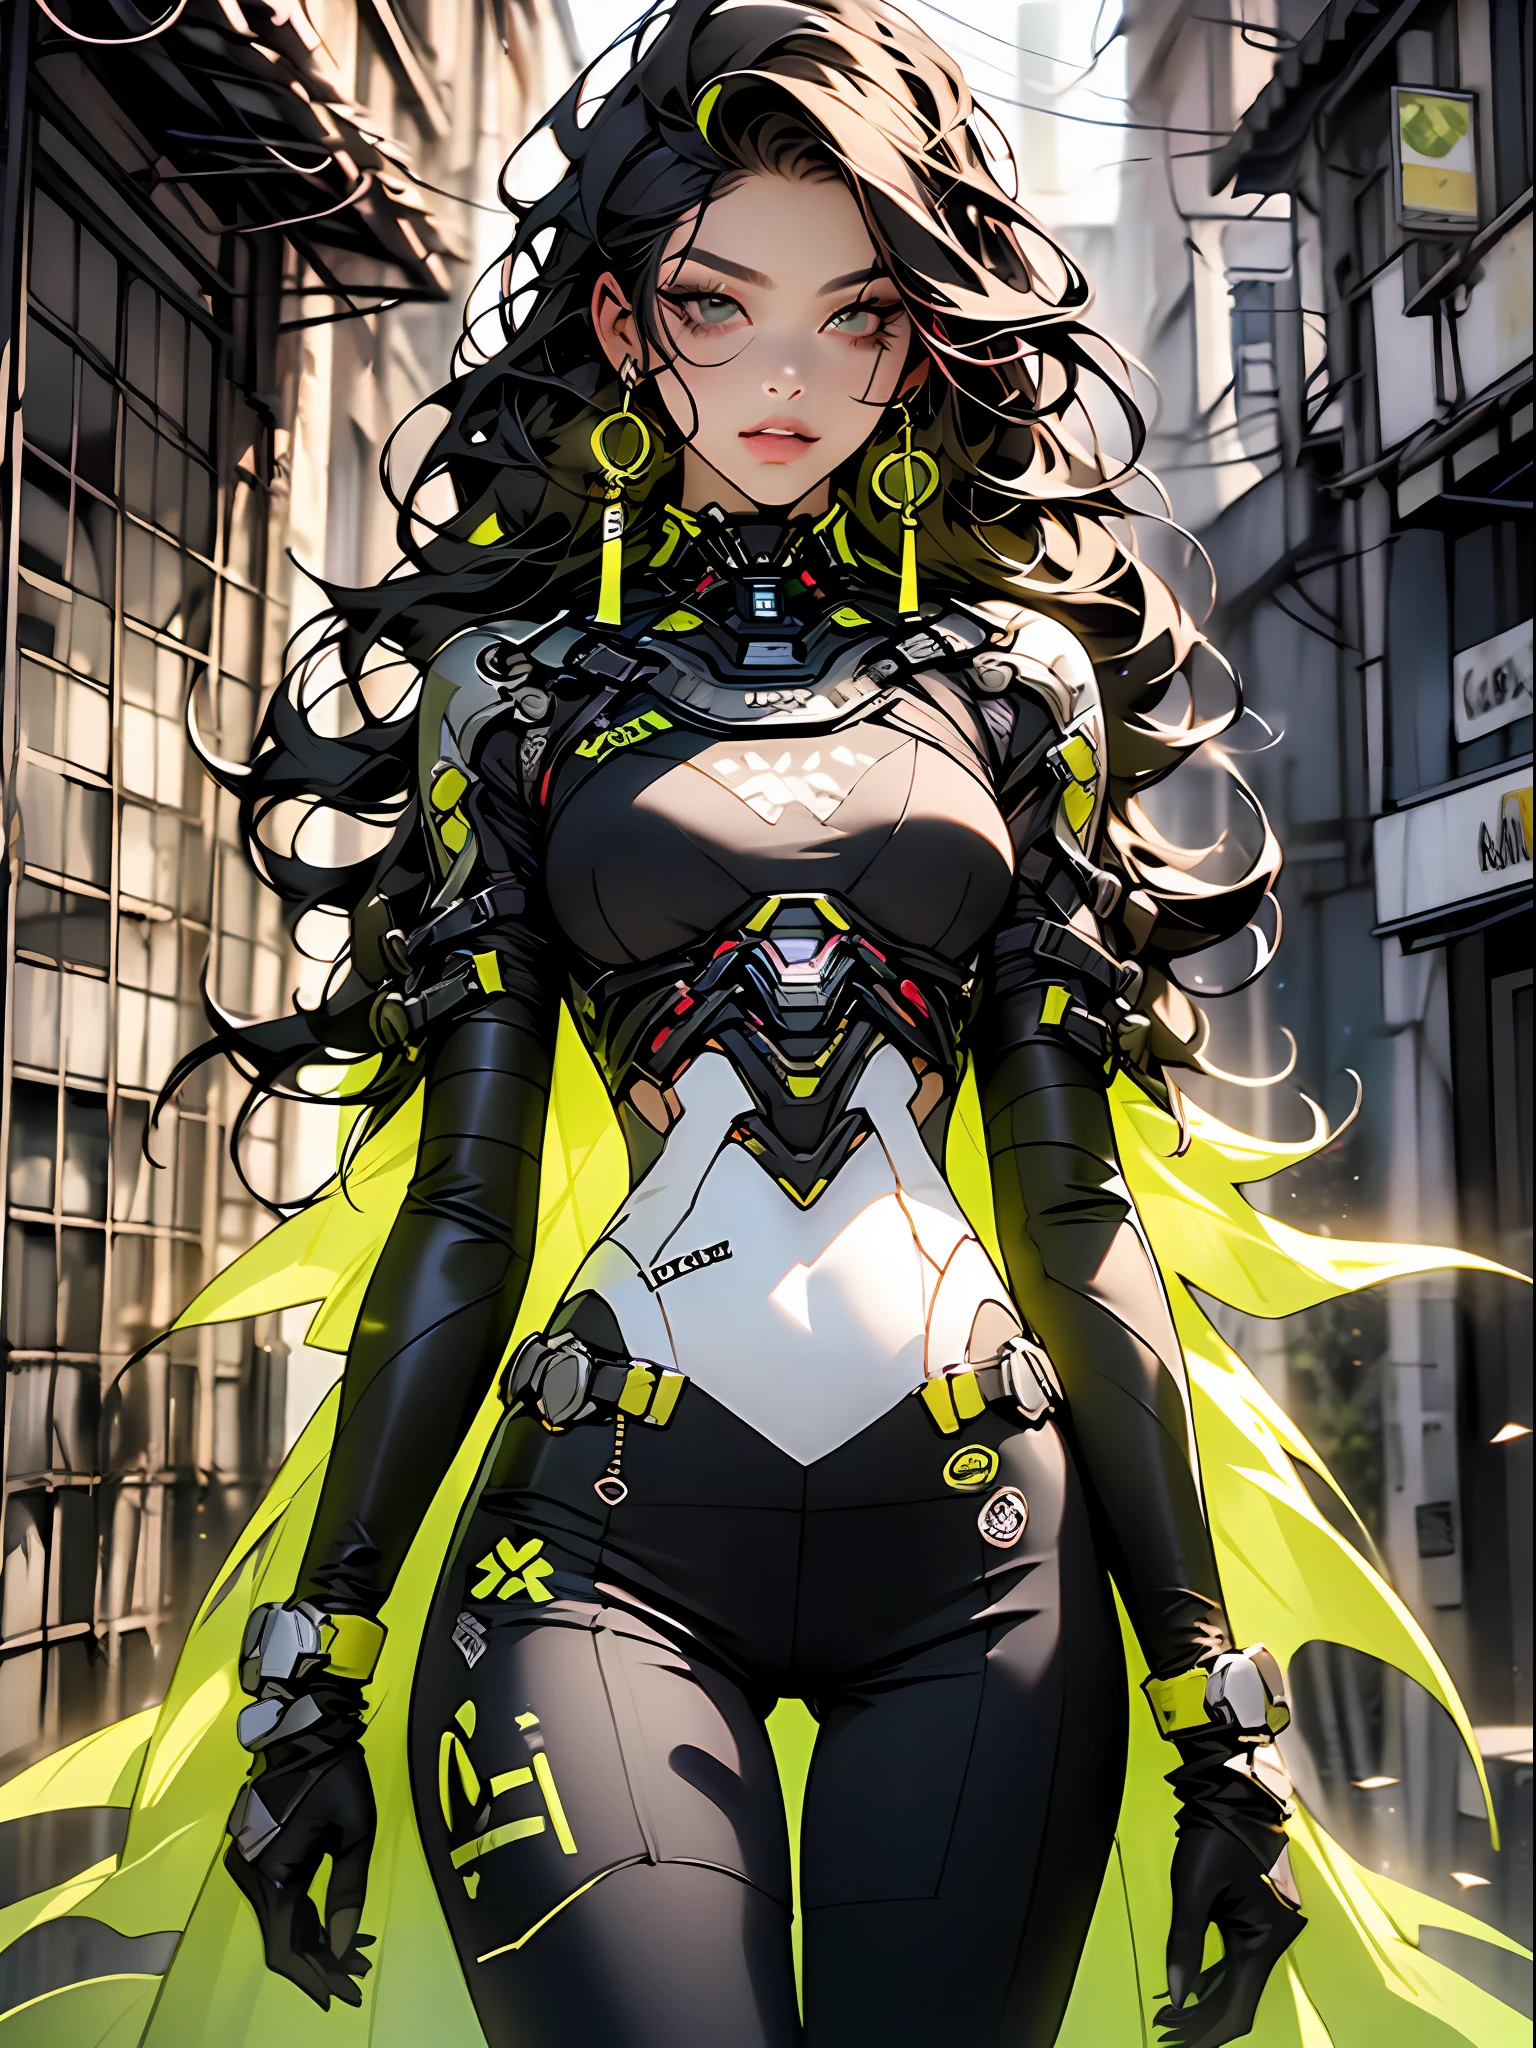 ((更好的品質)), ((第一份工作)), 穿著超詳細服裝、胸部呈骷髏形狀的成年女孩, 帶有黃色細節的現代黑色服裝, 白色的头发, 外骨骼城市战士